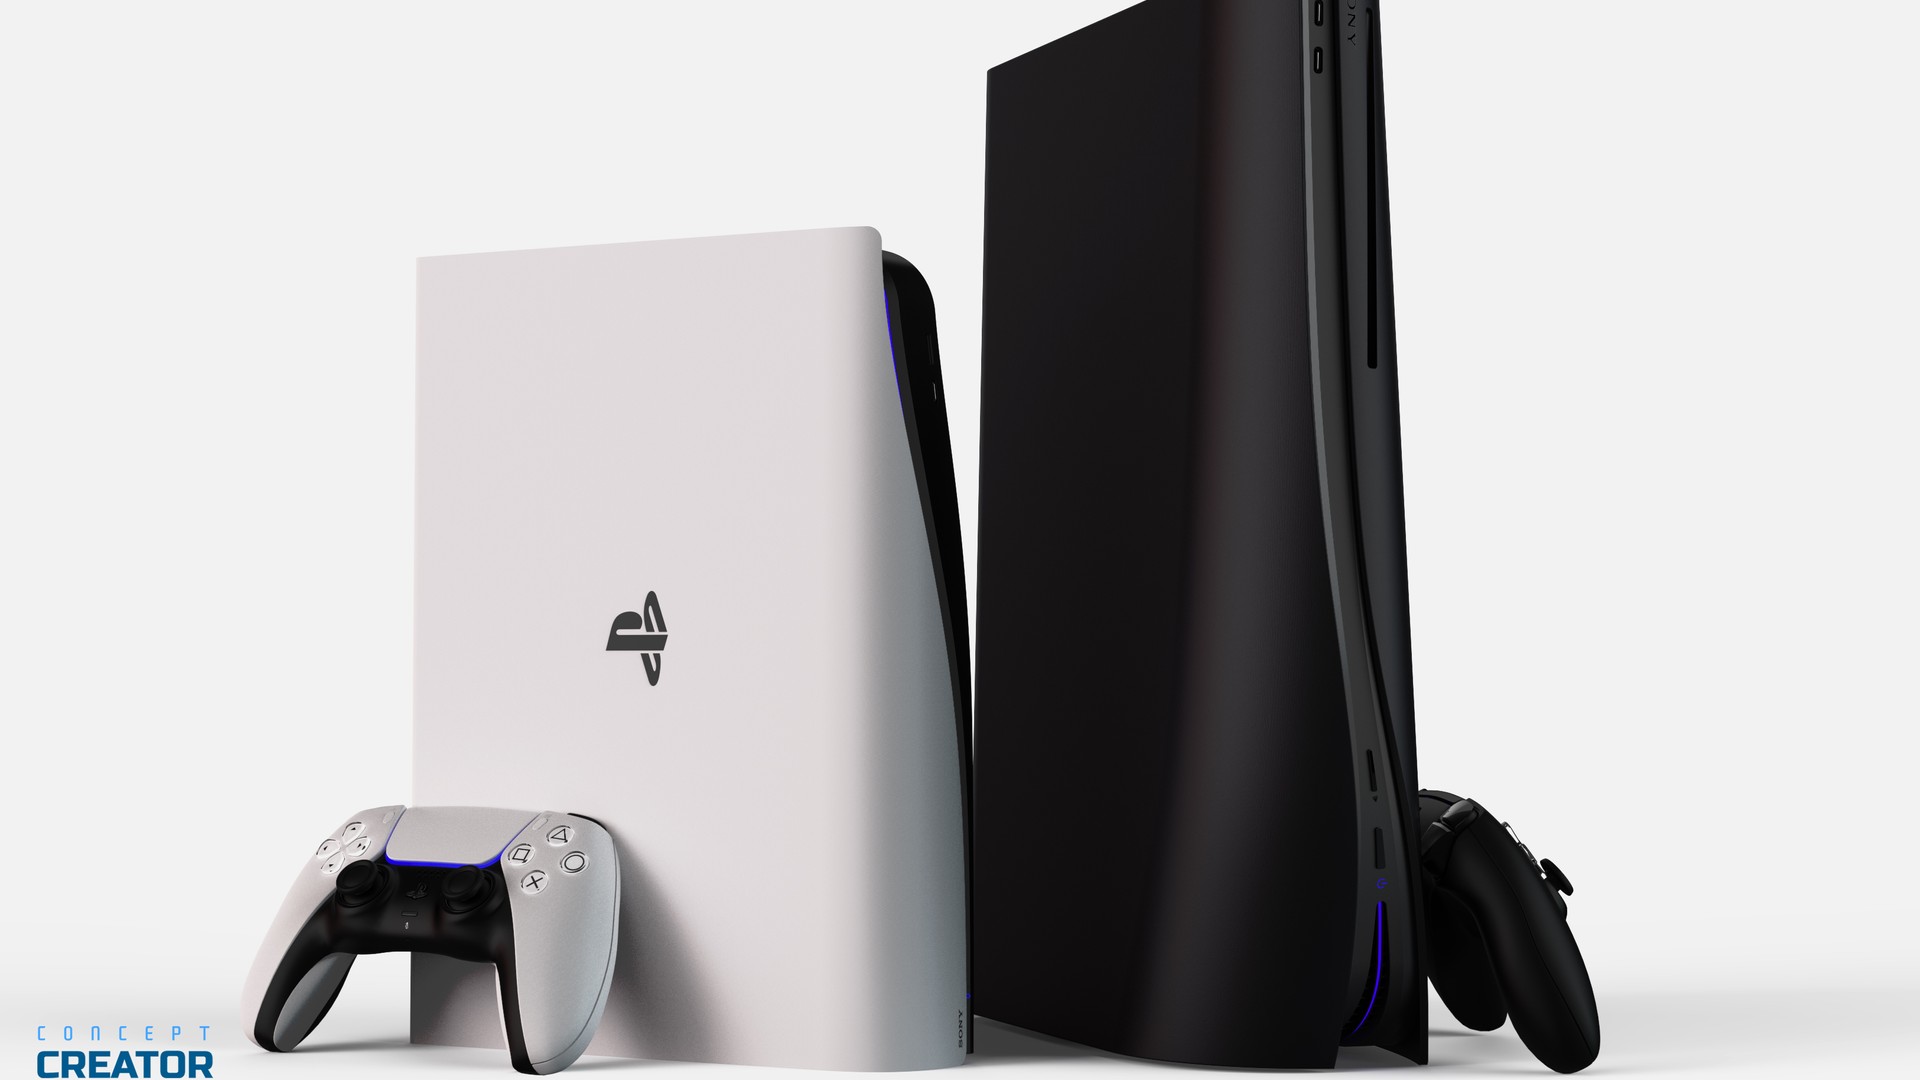 Fotos revelam um pouco mais do PS5 Slim; veja